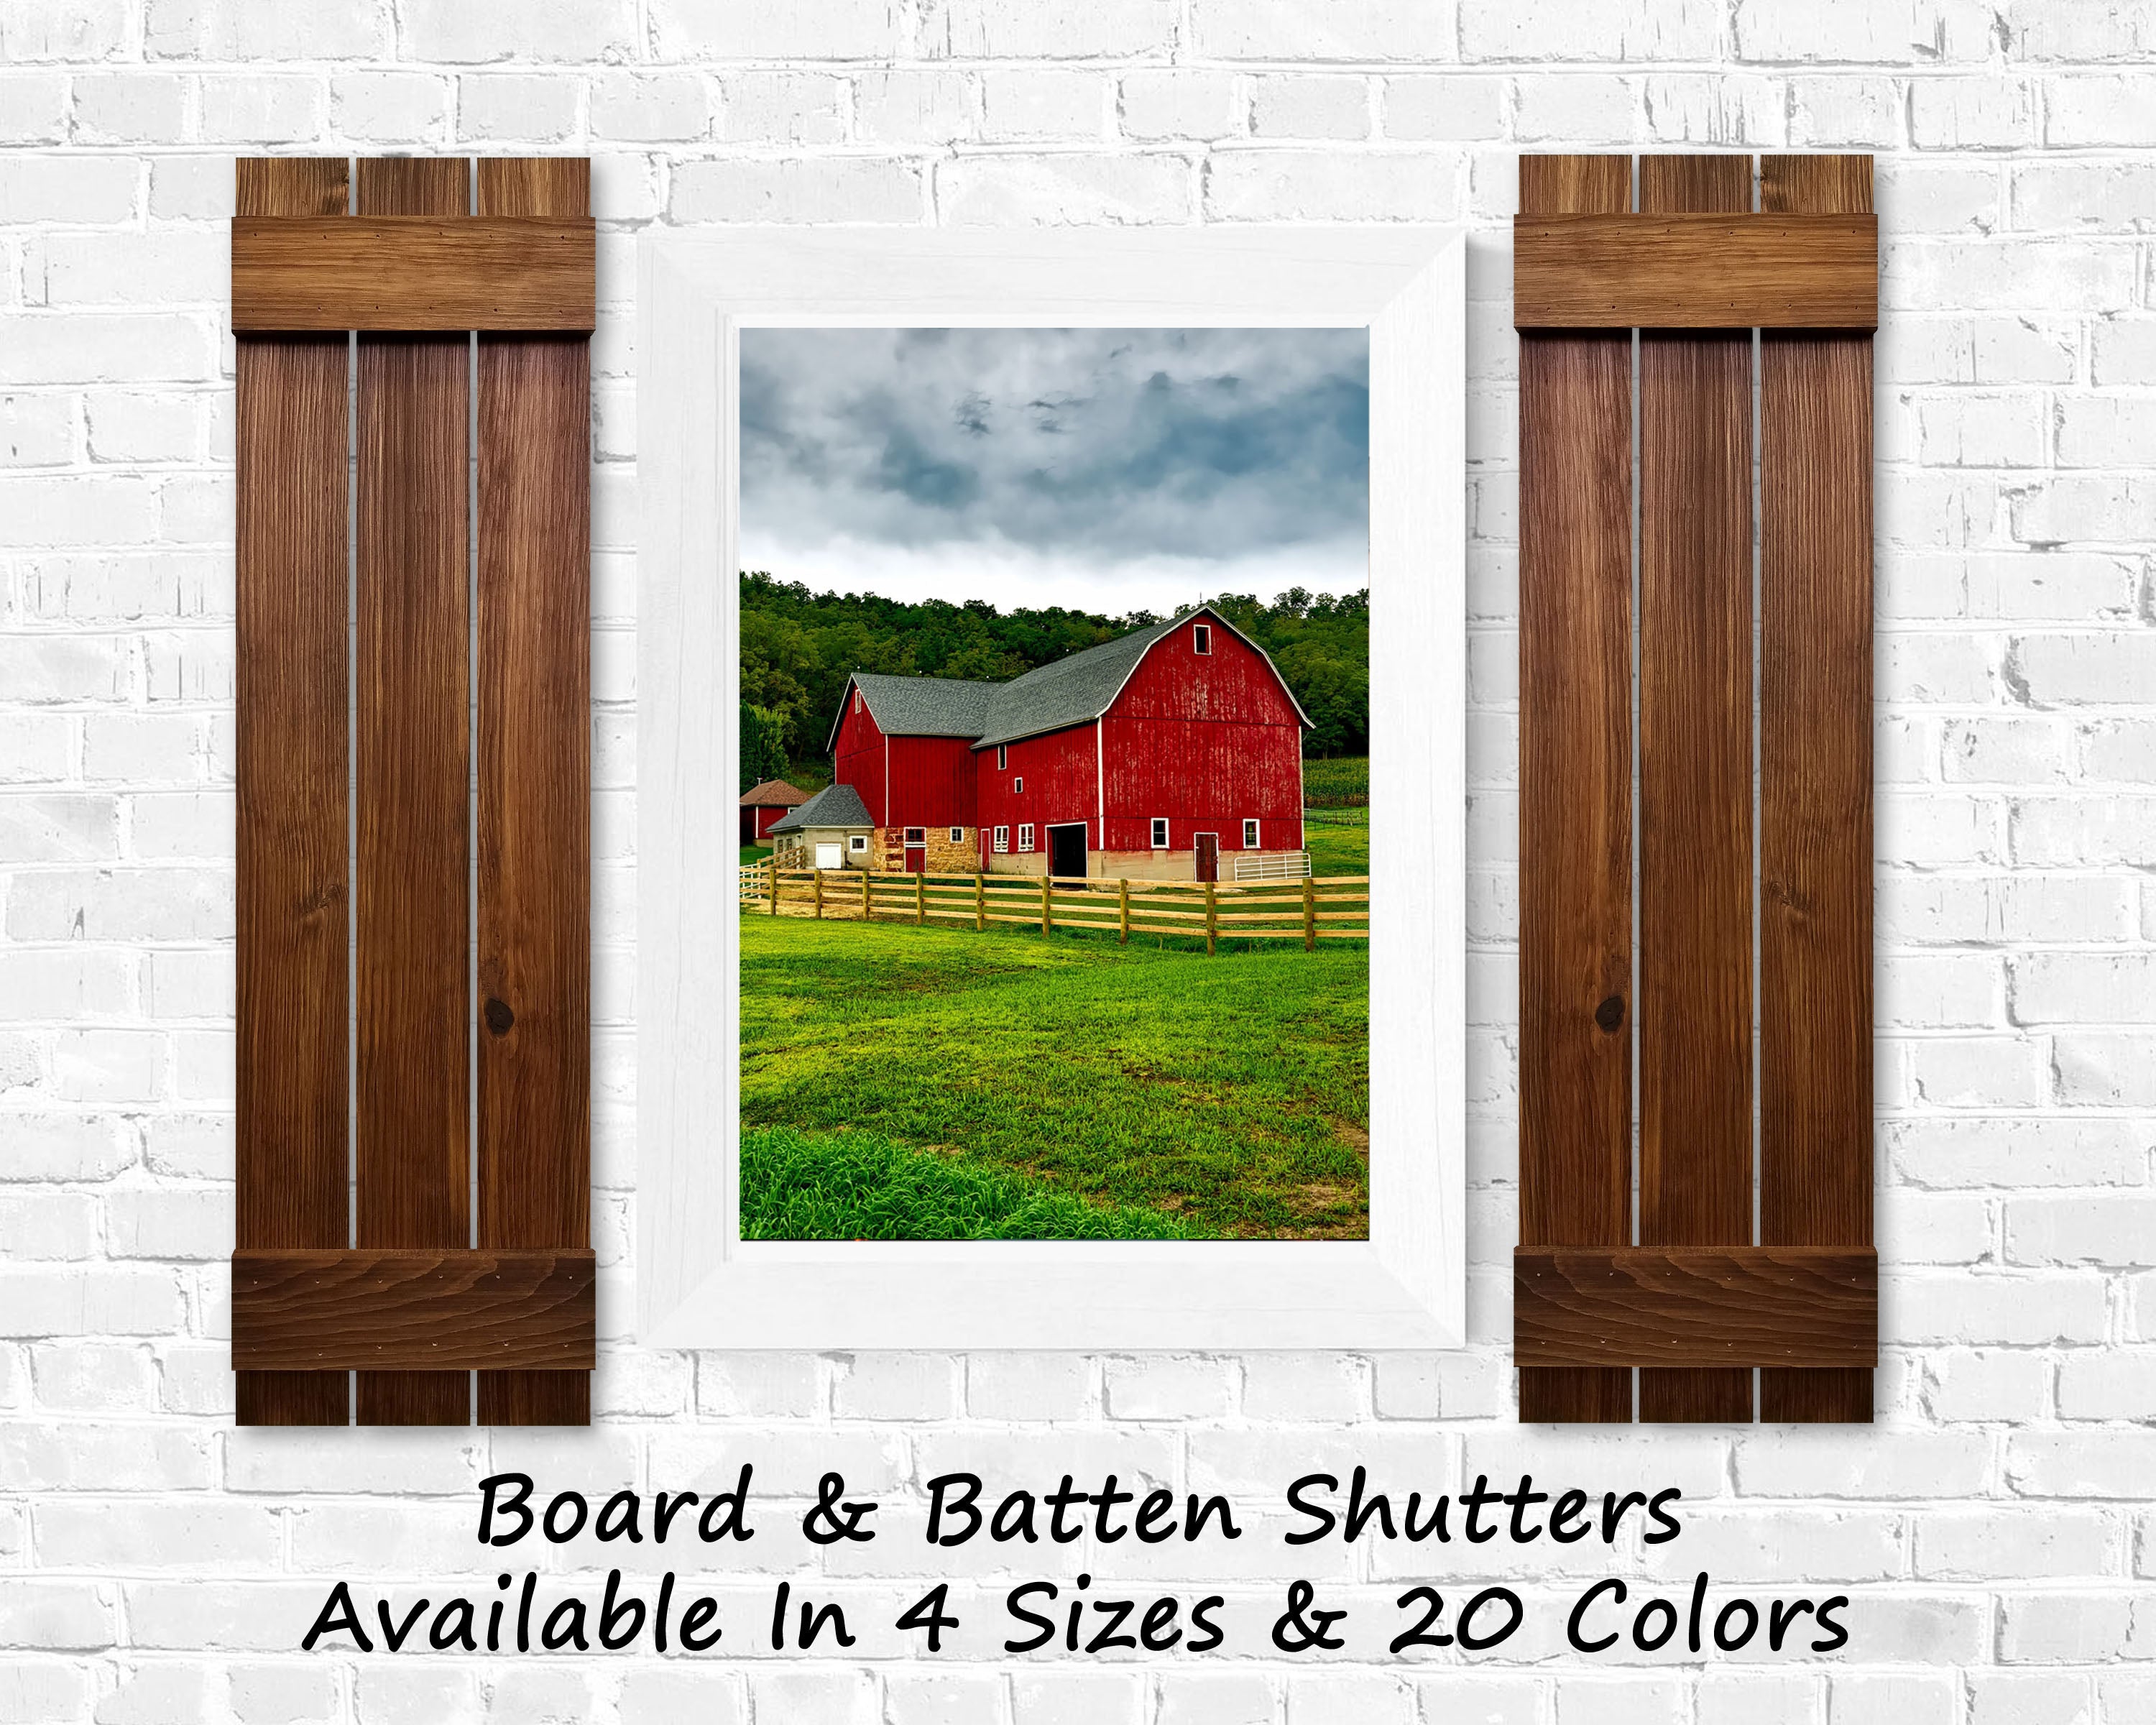 Board & Batten Shutters - 20 Stain Colors, Shown in Special Walnut, Lane of Lenore